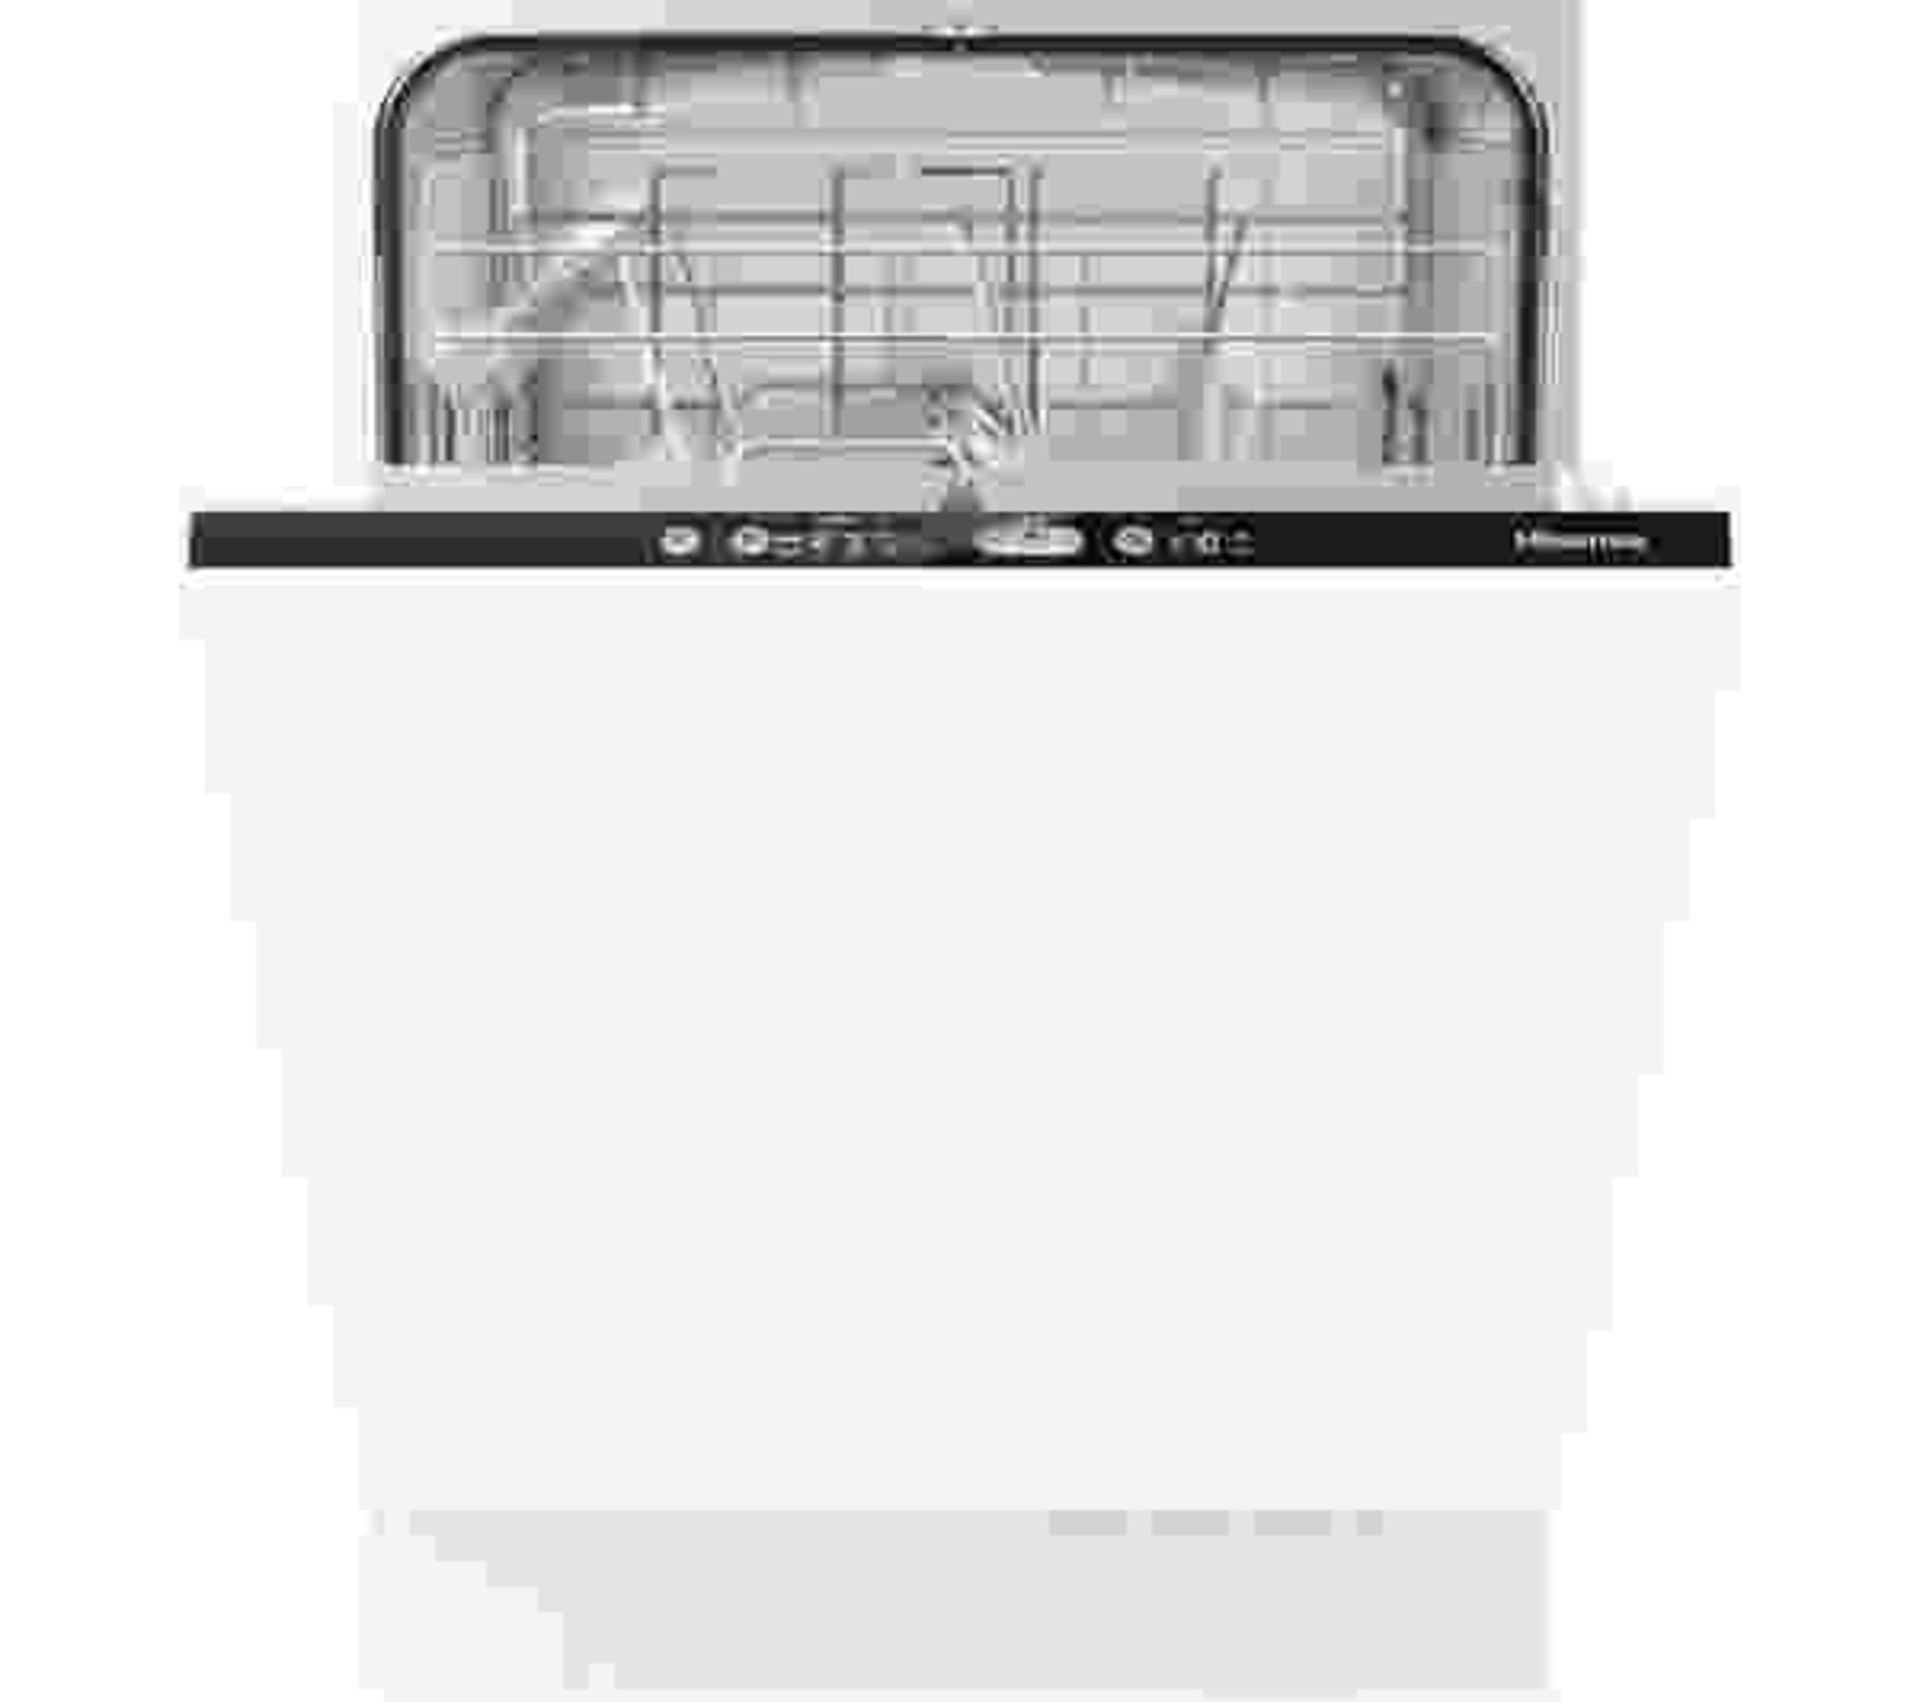 + VAT Grade B ISP £379 - Hisense HV651D60UK Fully Intergrated Dishwasher - 13 Place Settings - 15